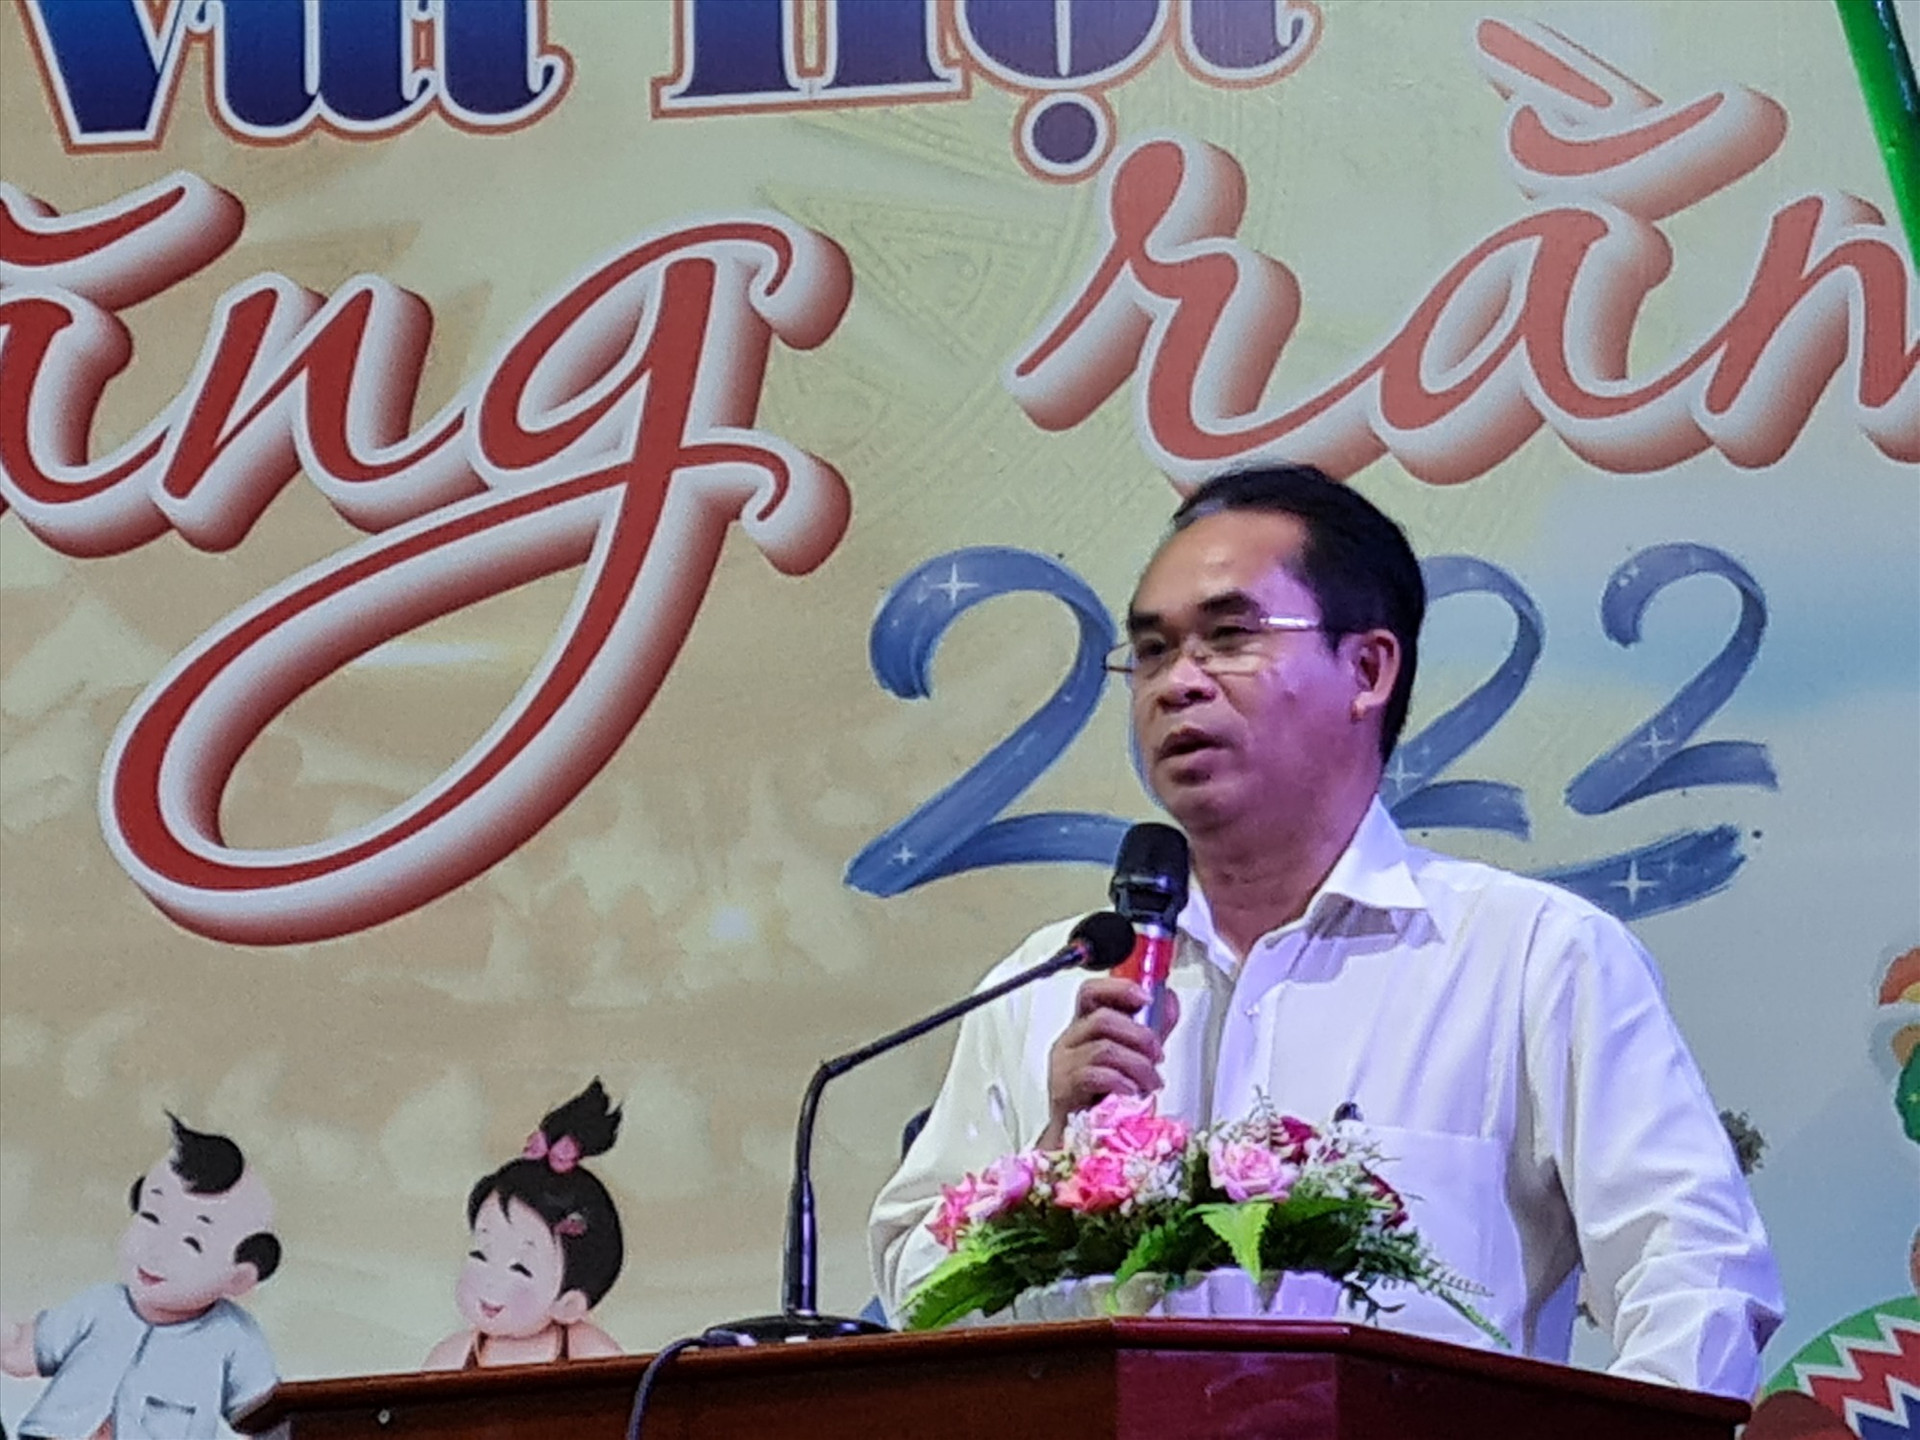 Phó Chủ tịch UBND tỉnh Trần Anh Tuấn phát biểu tại đêm hội trăng rằm. Ảnh: D.L